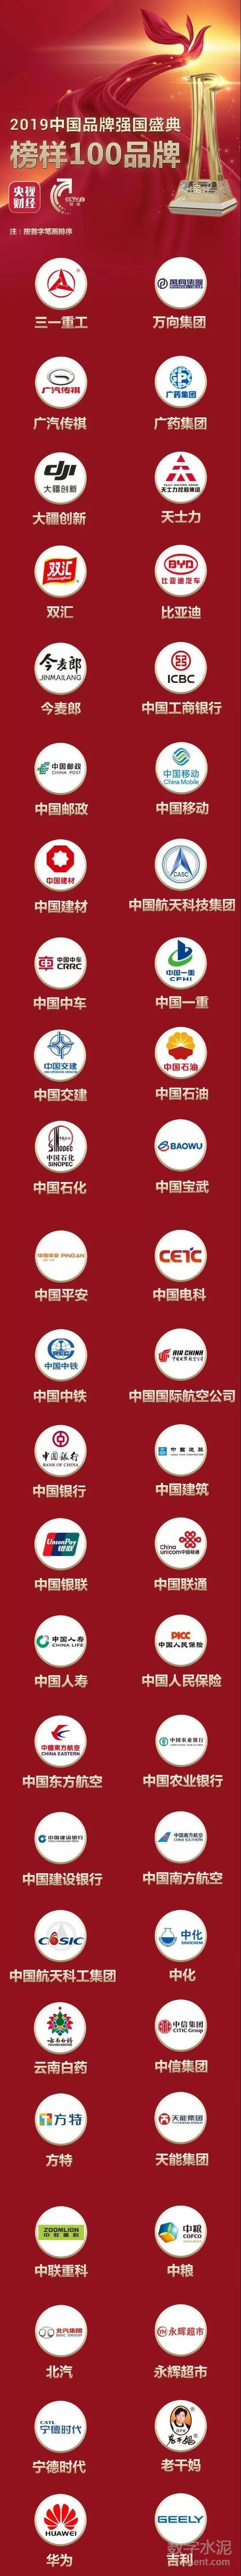 中国建材,华润上榜2019中国品牌强国盛典榜样100品牌